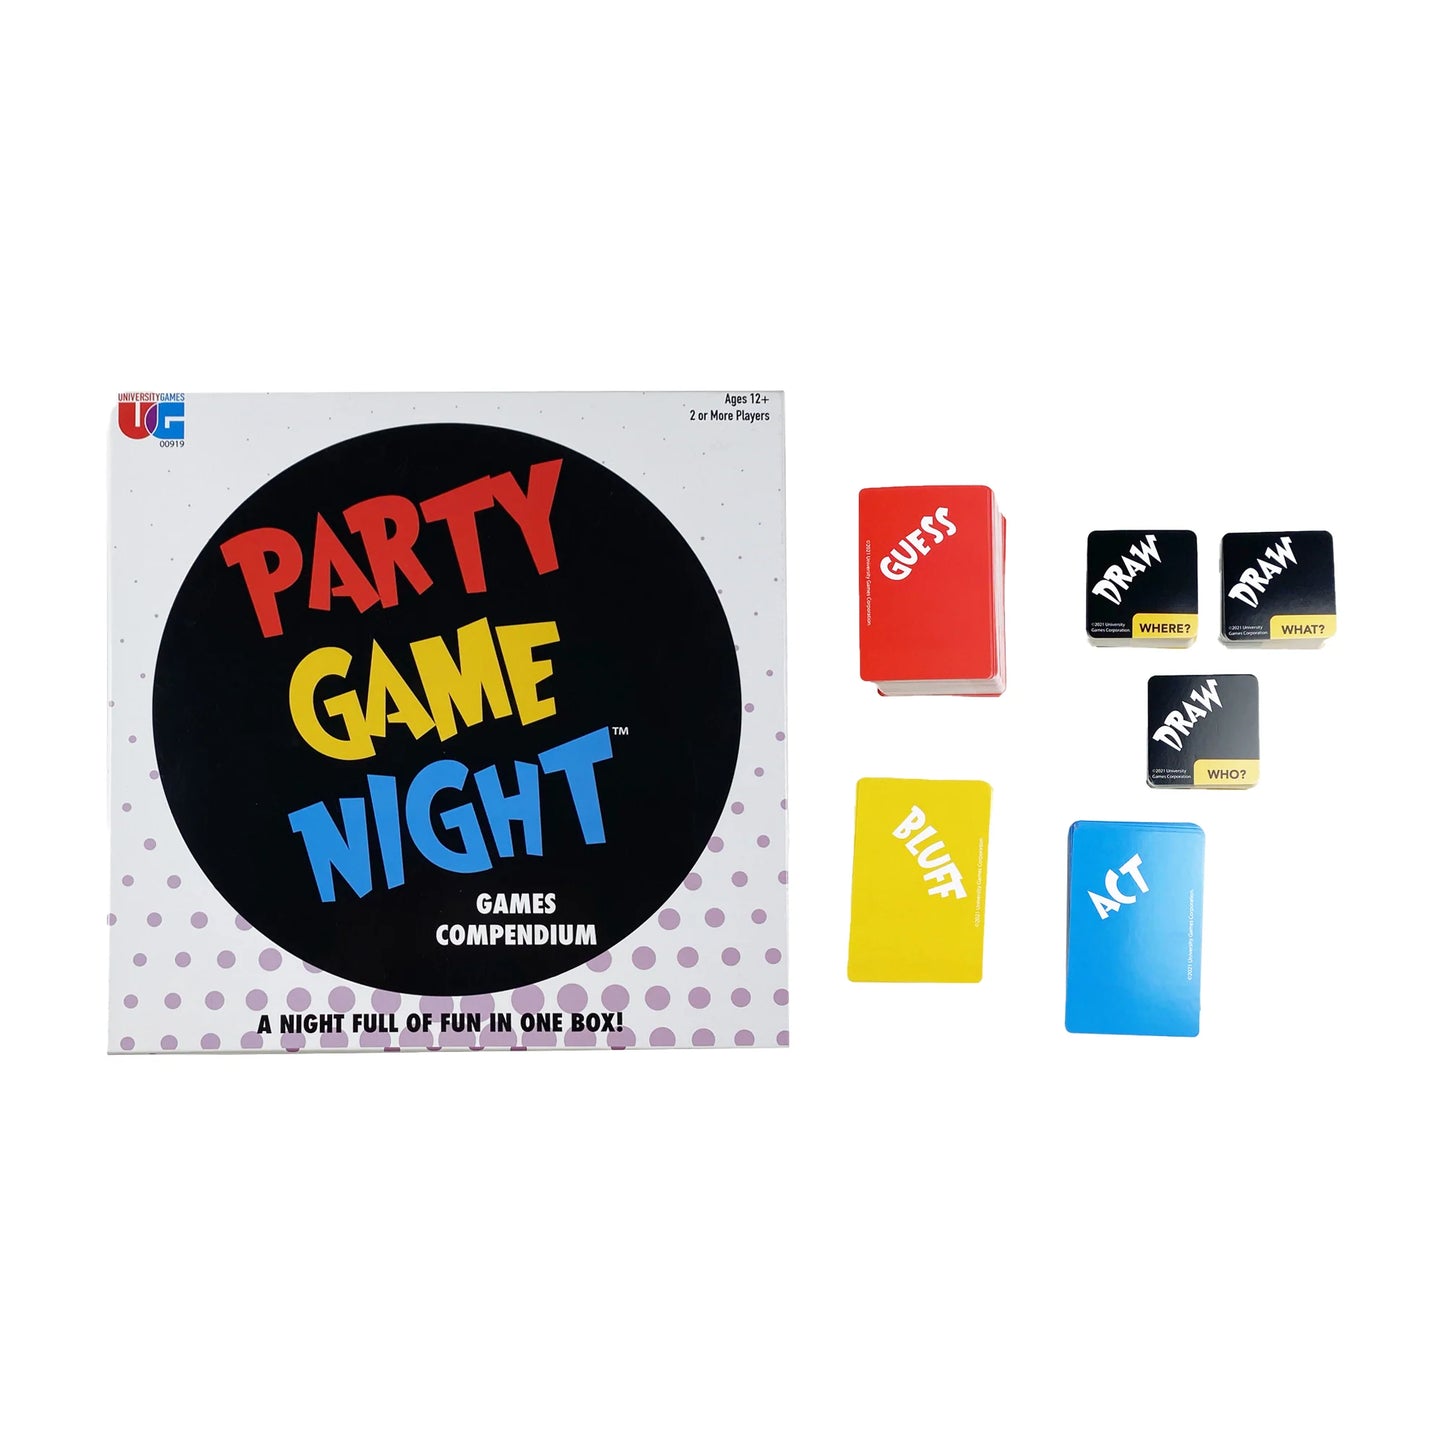 Party Game Night Games Compendium